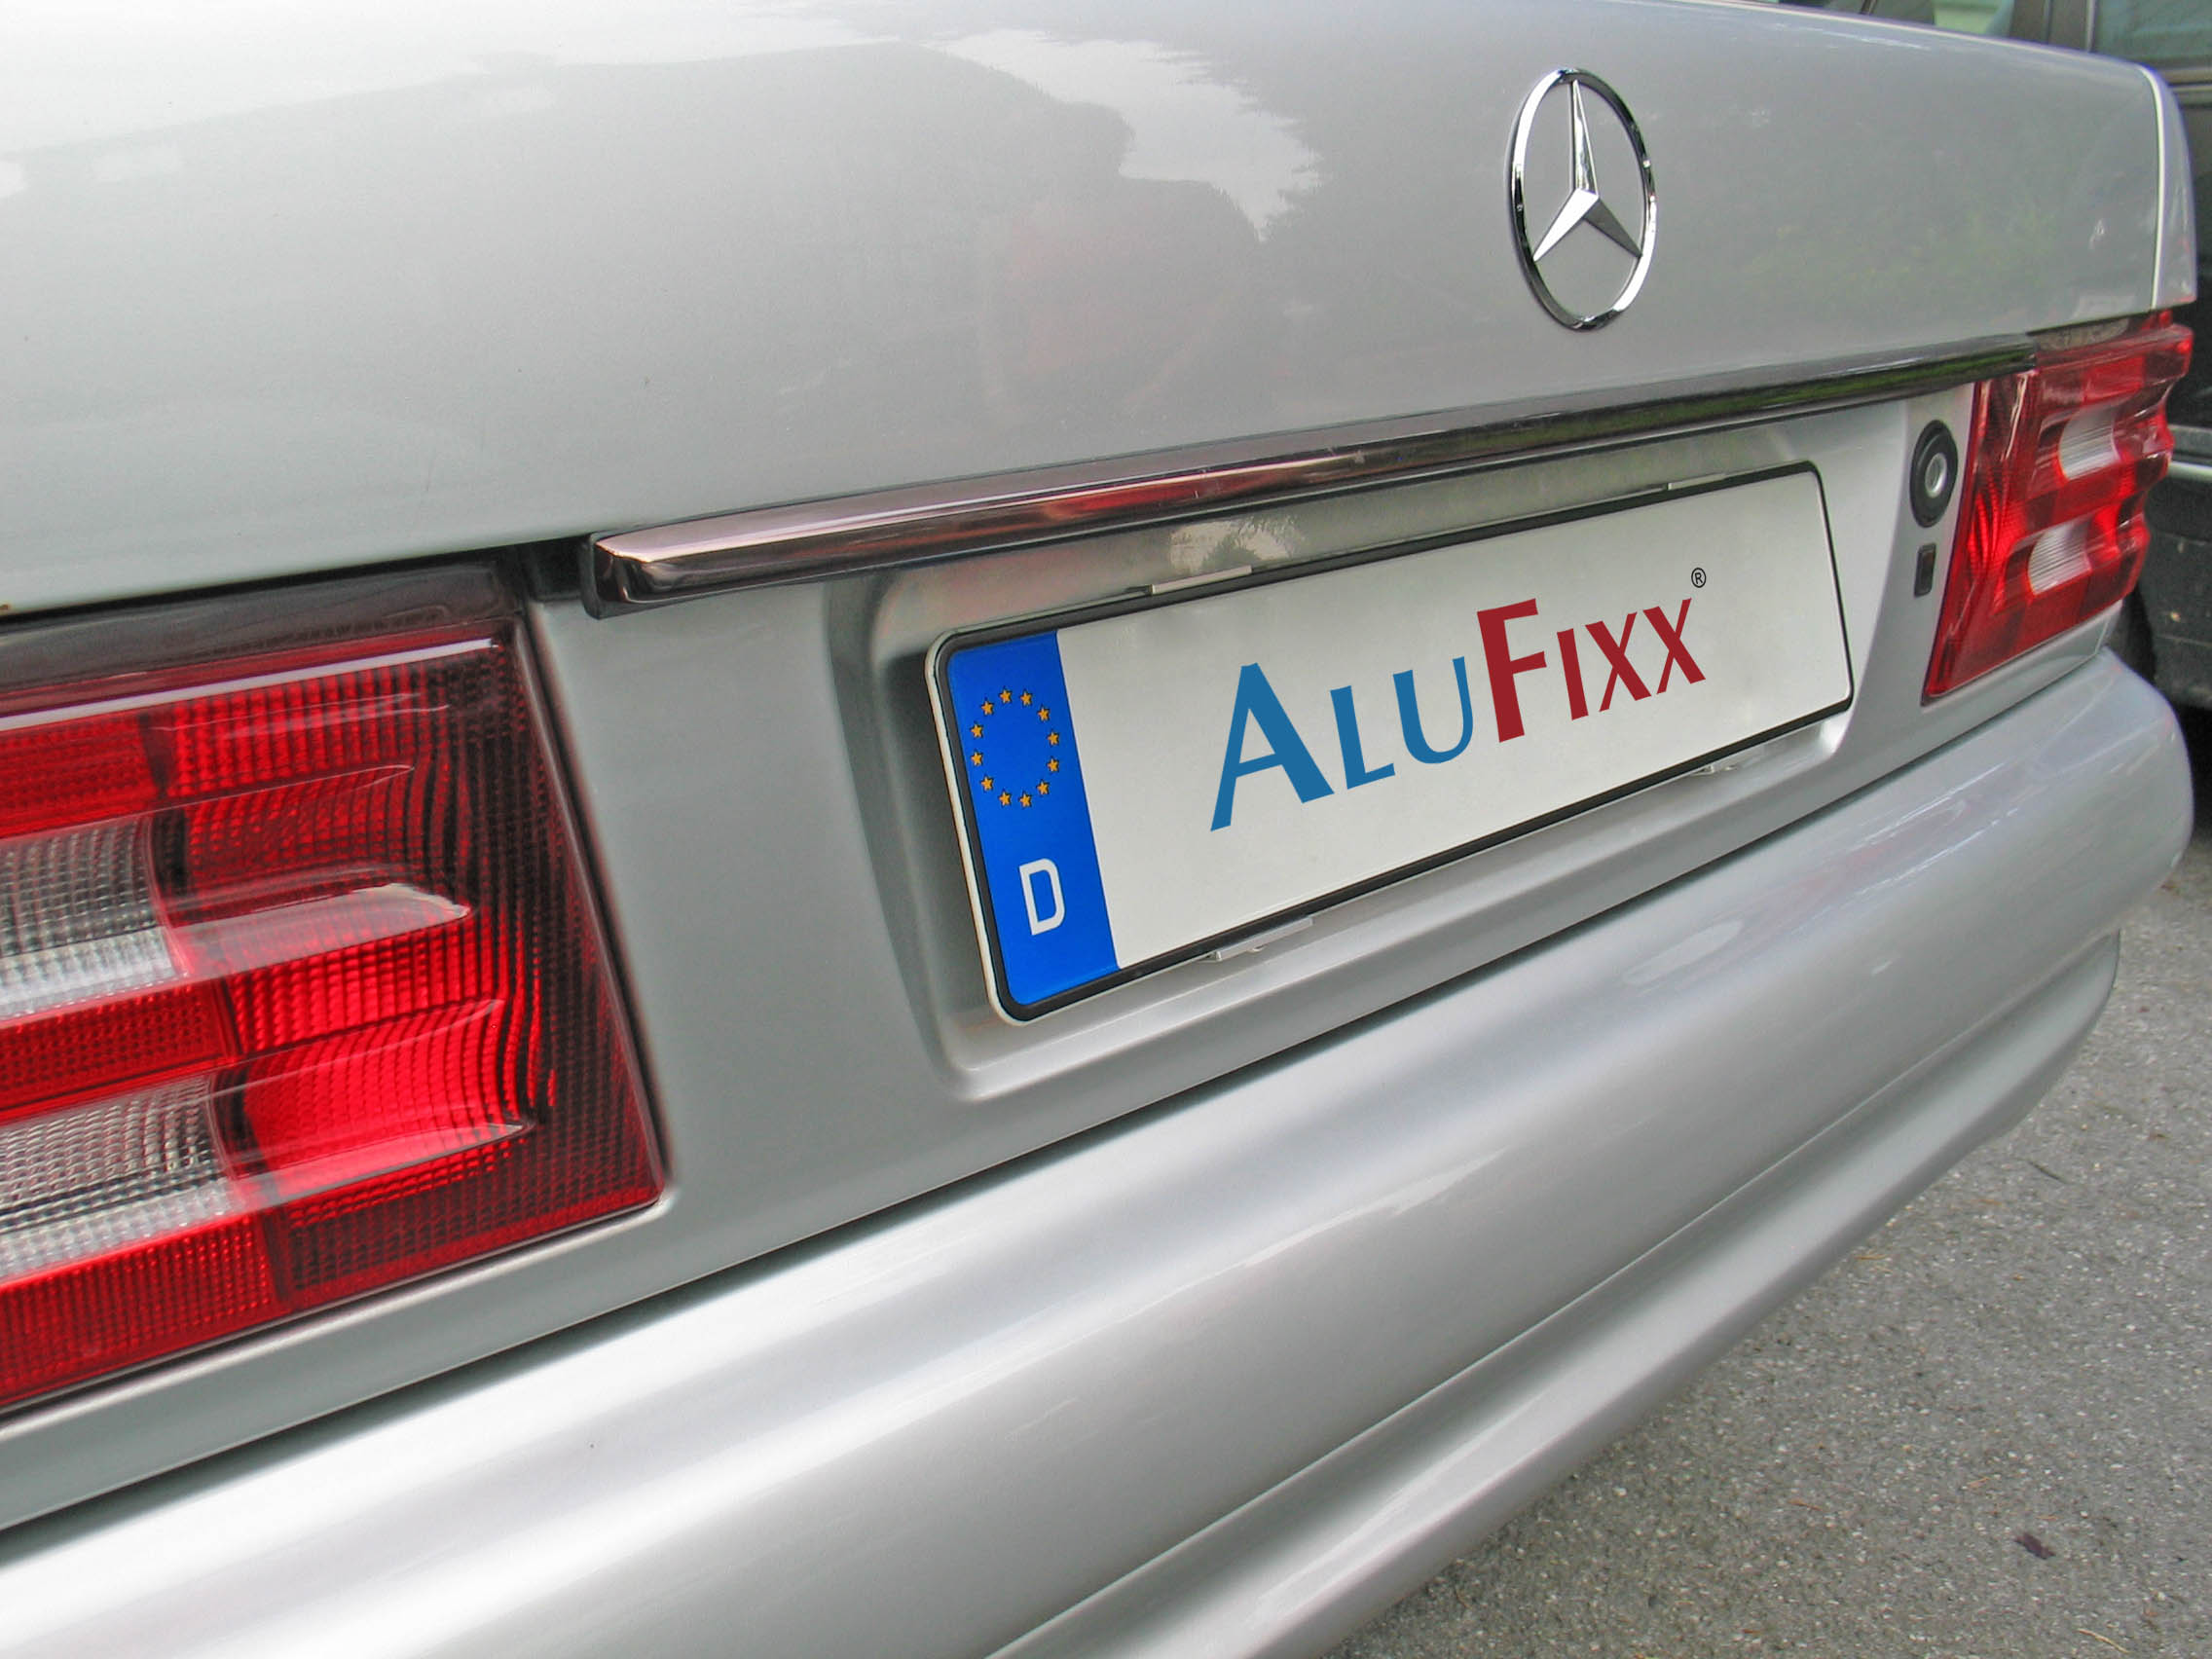 AluFixx Bike Kennzeichenhalter schwarz matt eloxiert, Bremsen